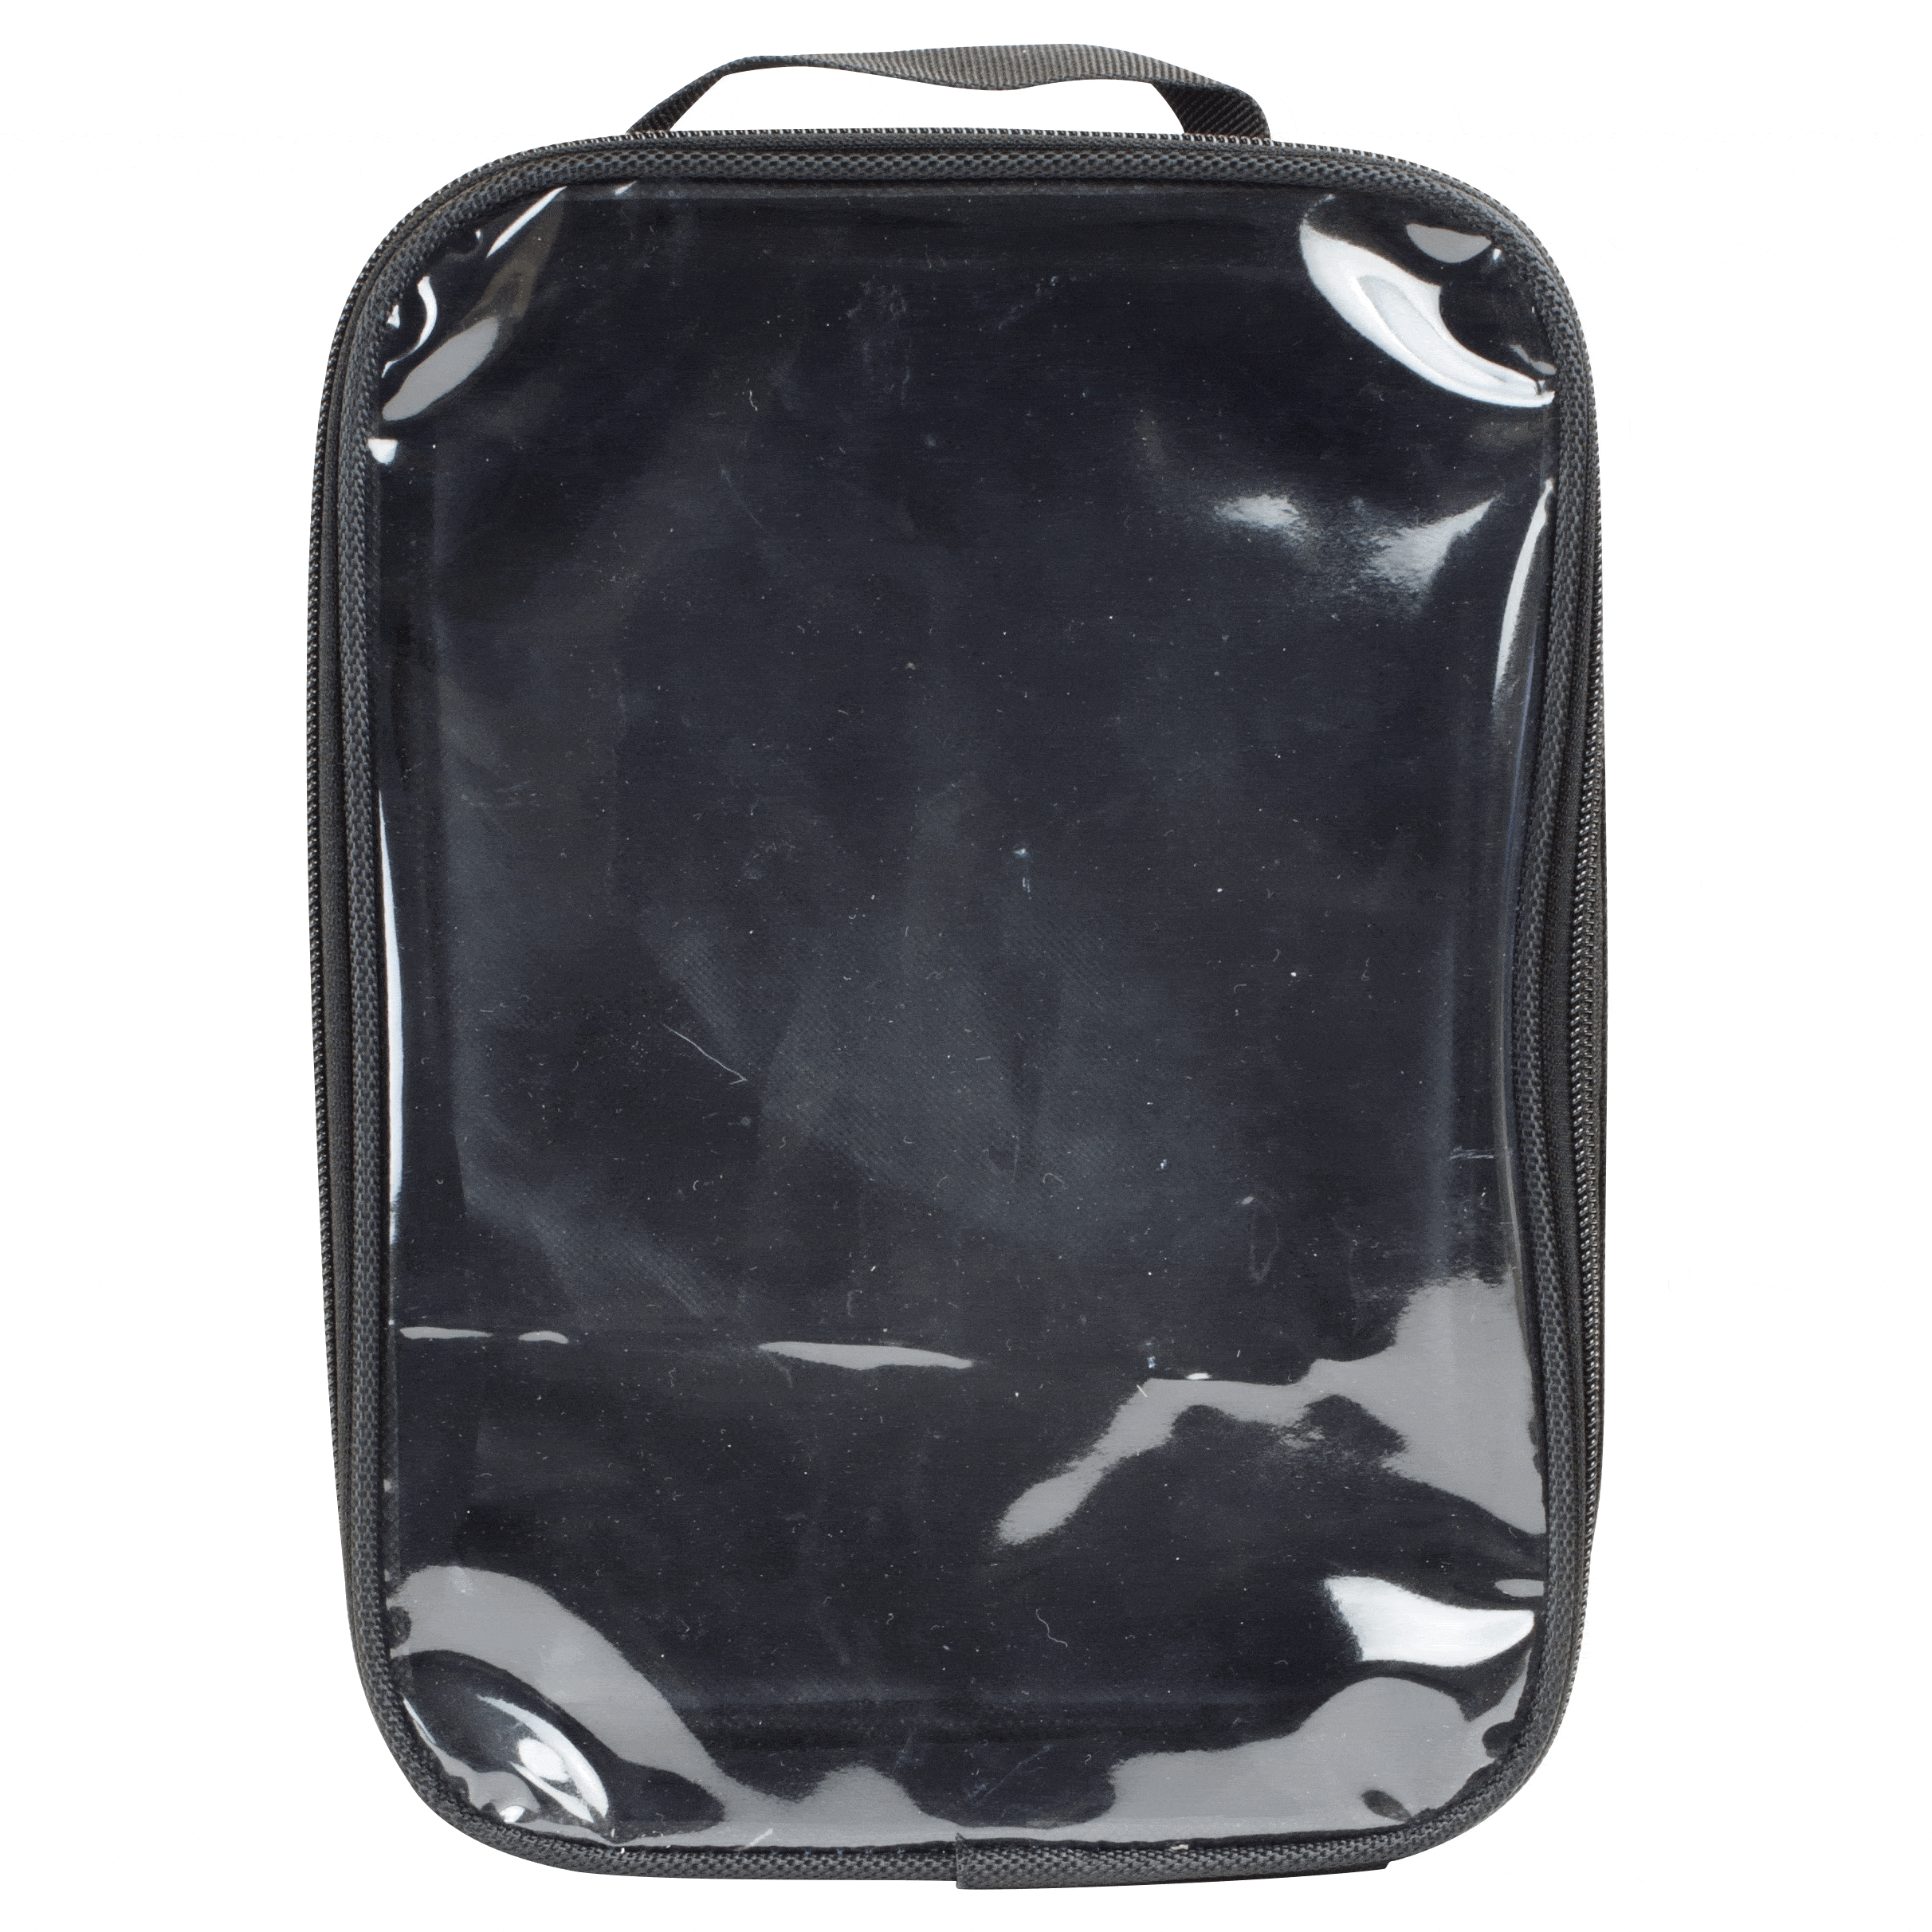 Resp-O2 Nebulizer Carry Bag $36.00/Case of 4 Dynarex 34406